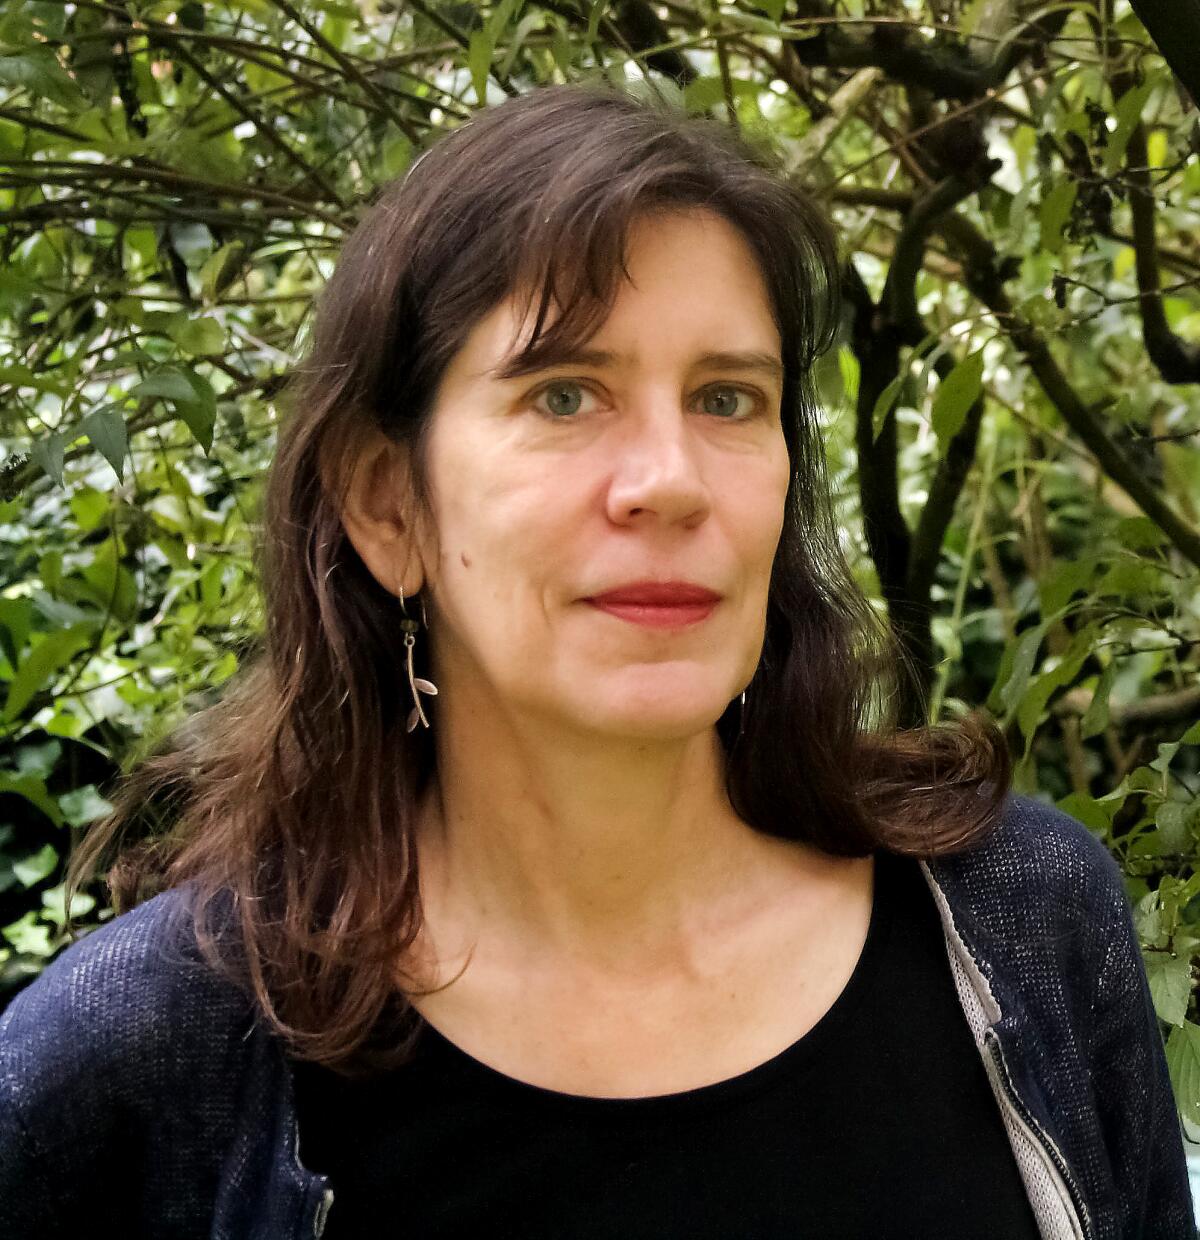 Author Julie Phillips